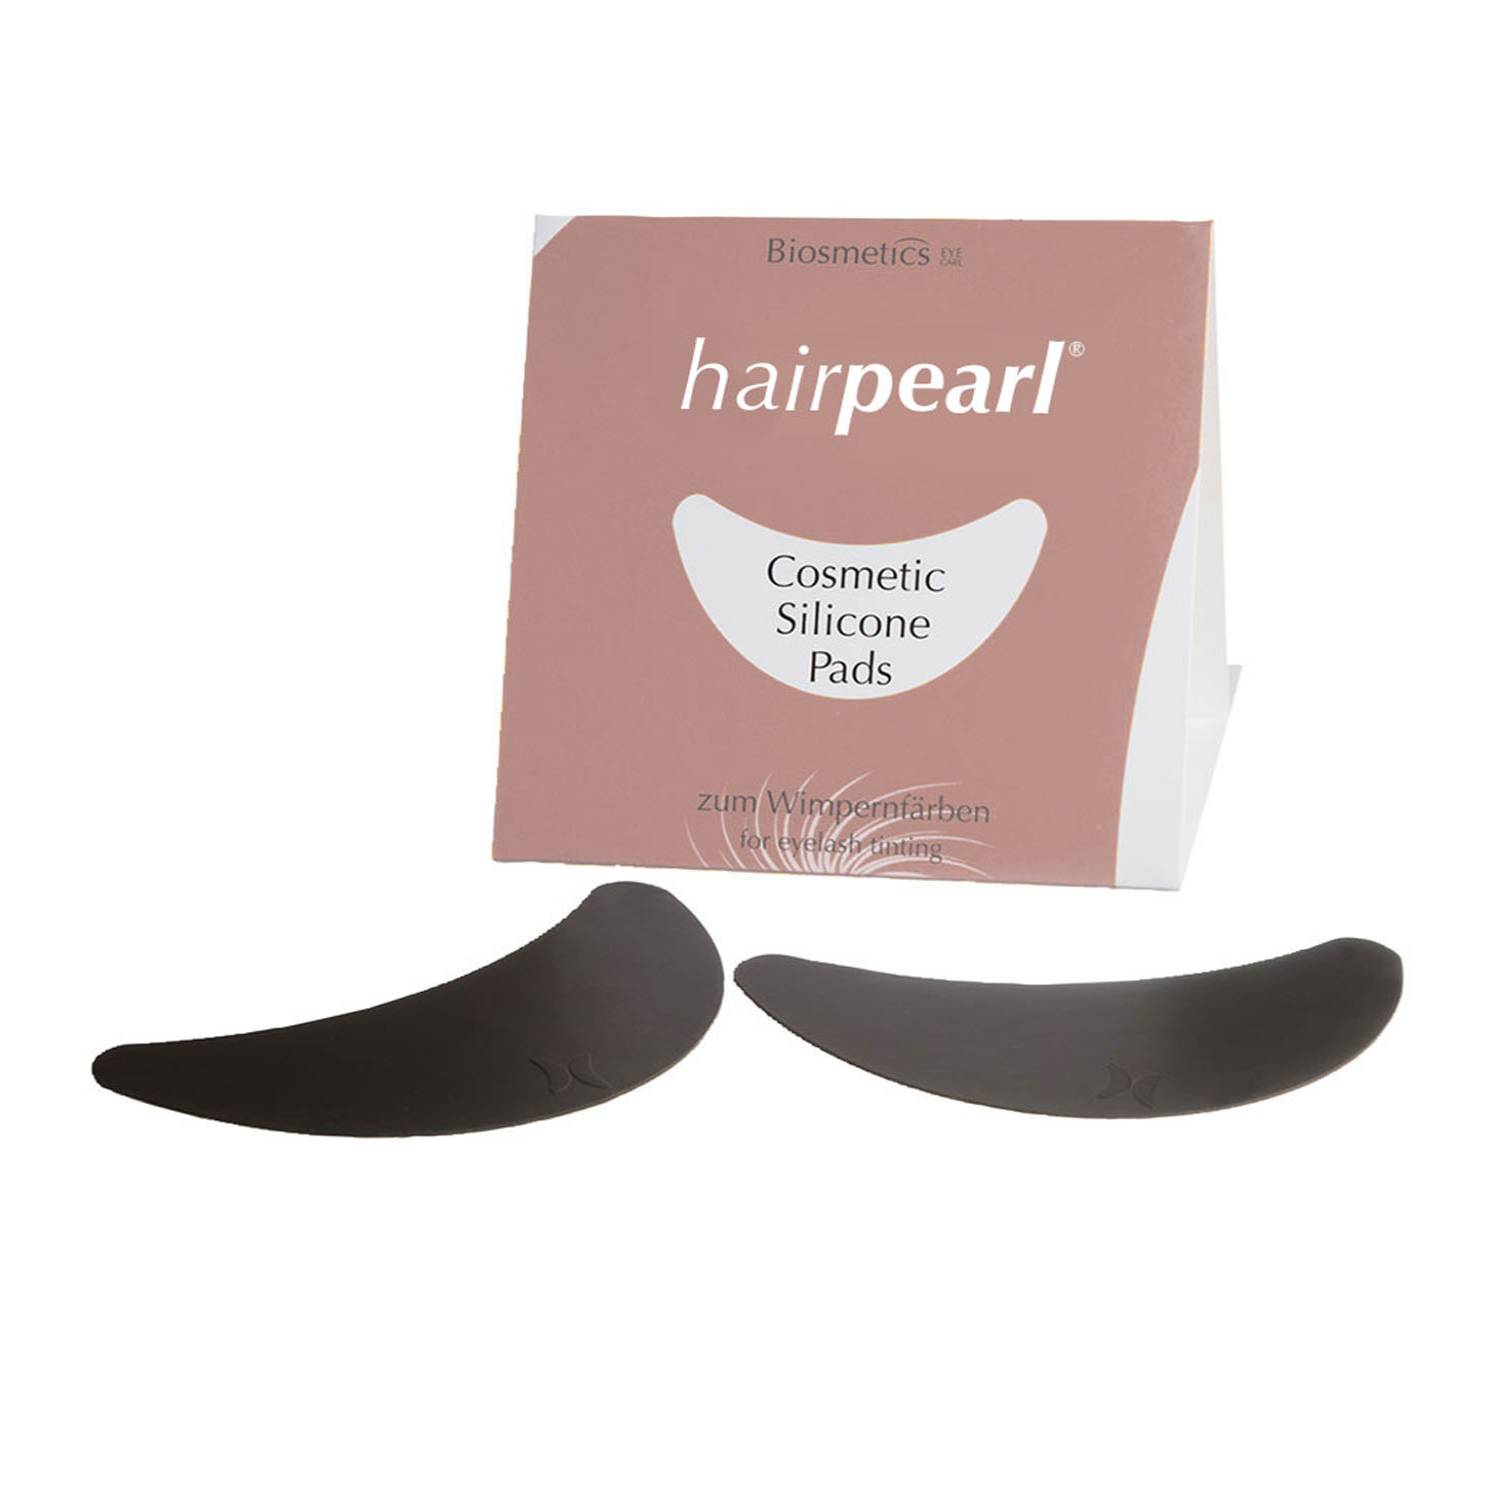 HairPearl Cosmetics Silicone Pads - silikónové podložky pod oči, 1 pár